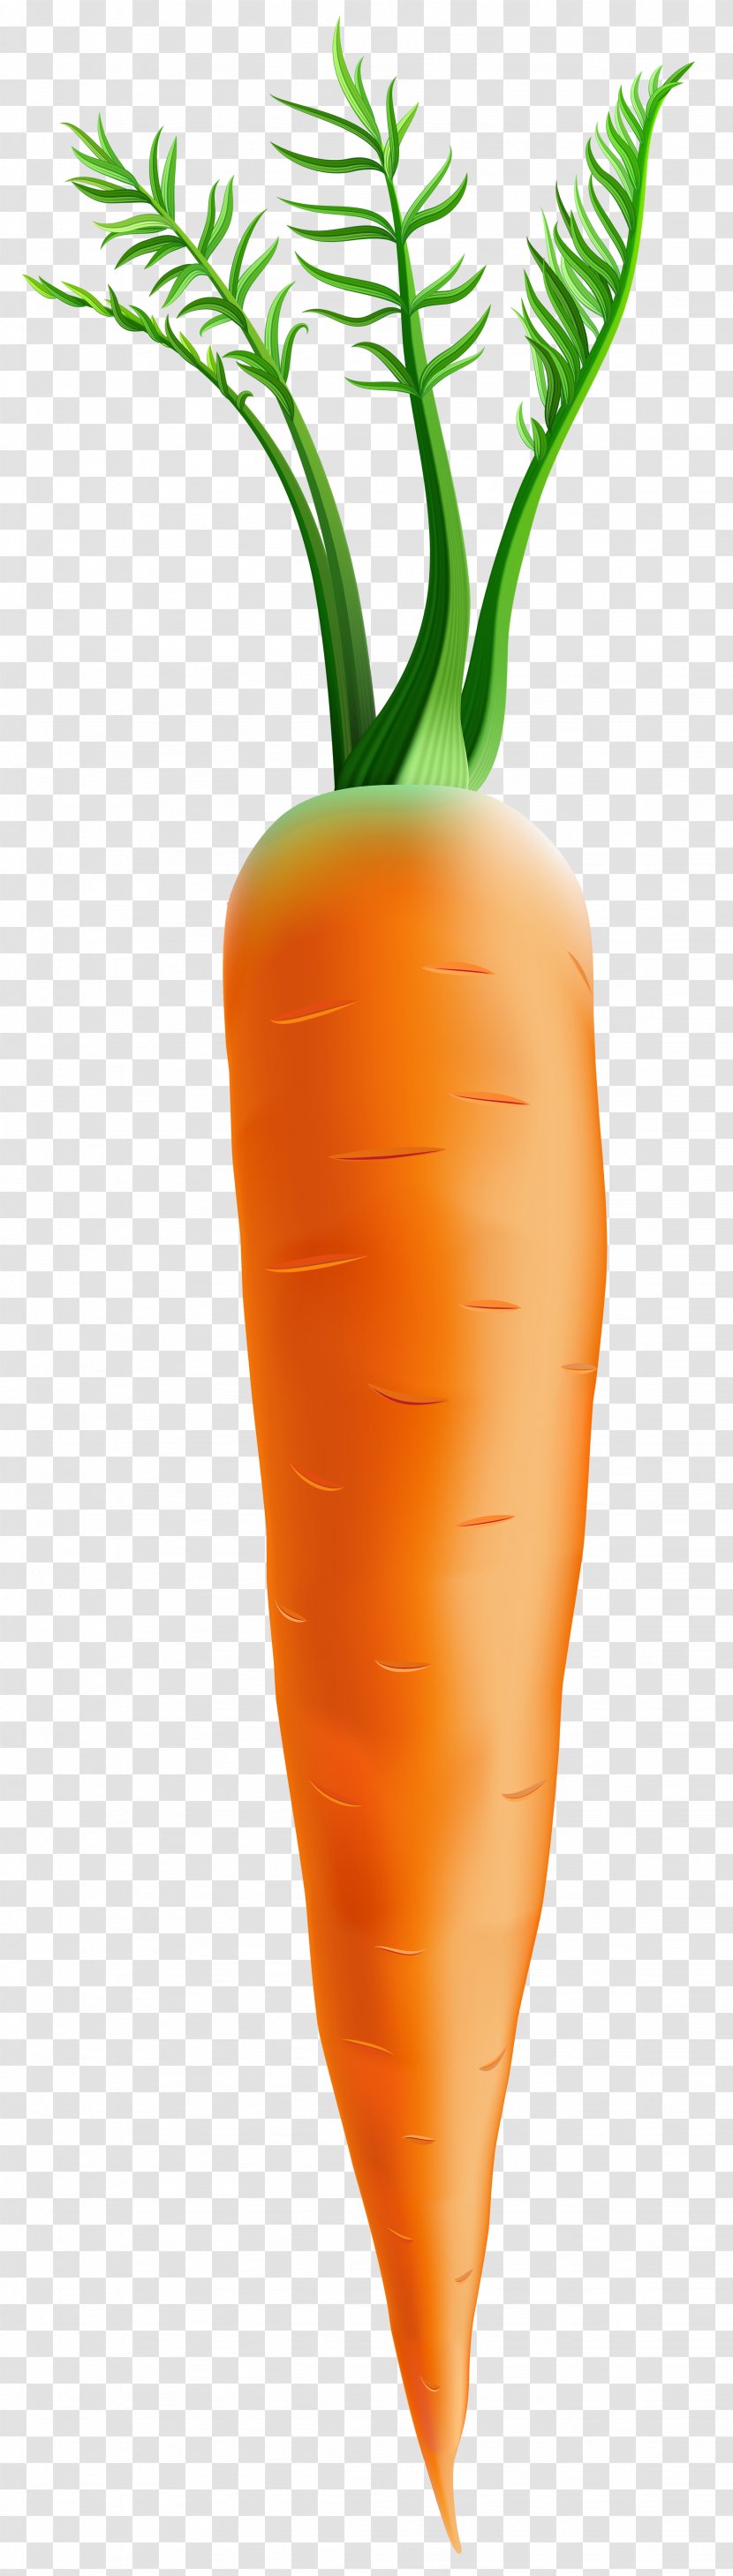 Carrot Orange Flowerpot - Clip Art Image Transparent PNG